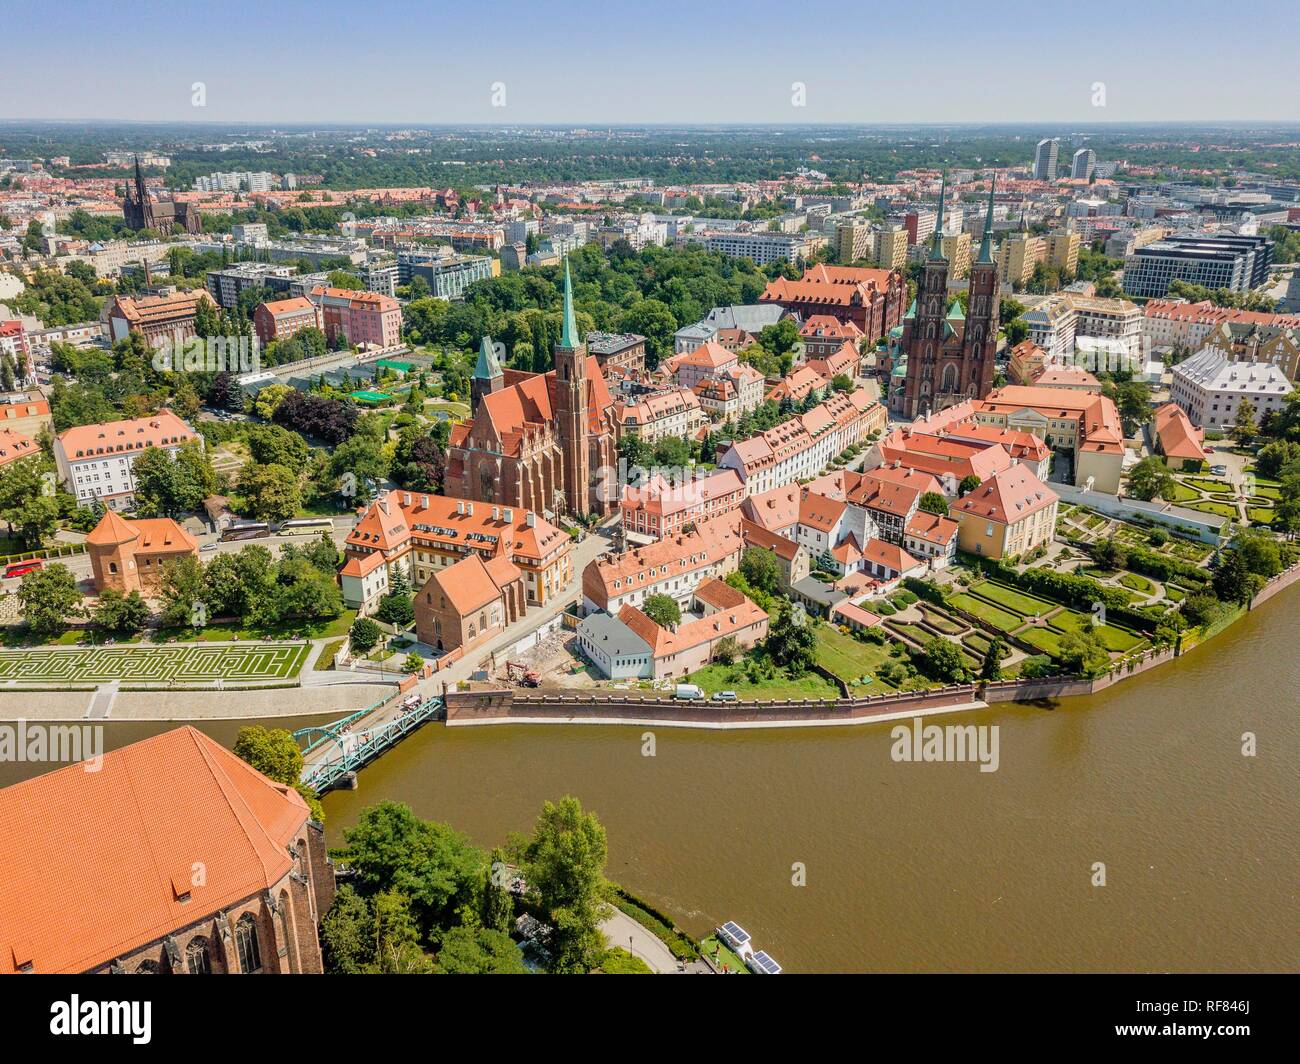 La plus ancienne image de drone, partie historique de Wroclaw située  principalement sur les îles, Pologne Photo Stock - Alamy